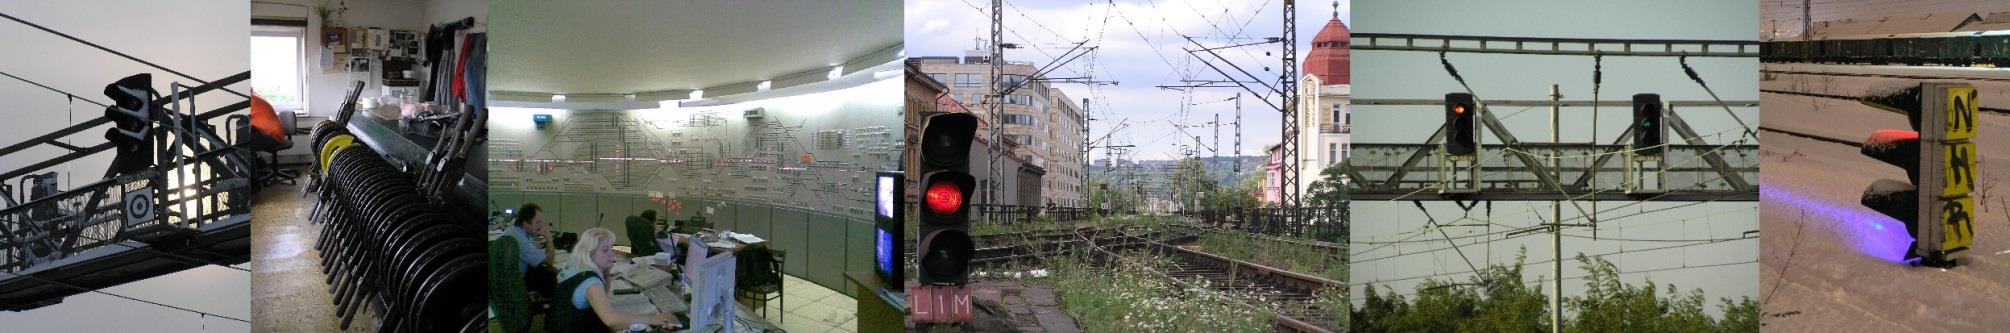 Zavádění ETCS realizace ETCS vyplývá z mezinárodních závazků ČR povinnost vybavit tranzitní koridory a tratě Brno - Havlíčkův Brod - Kolín - Nymburk - Ústí n. L.